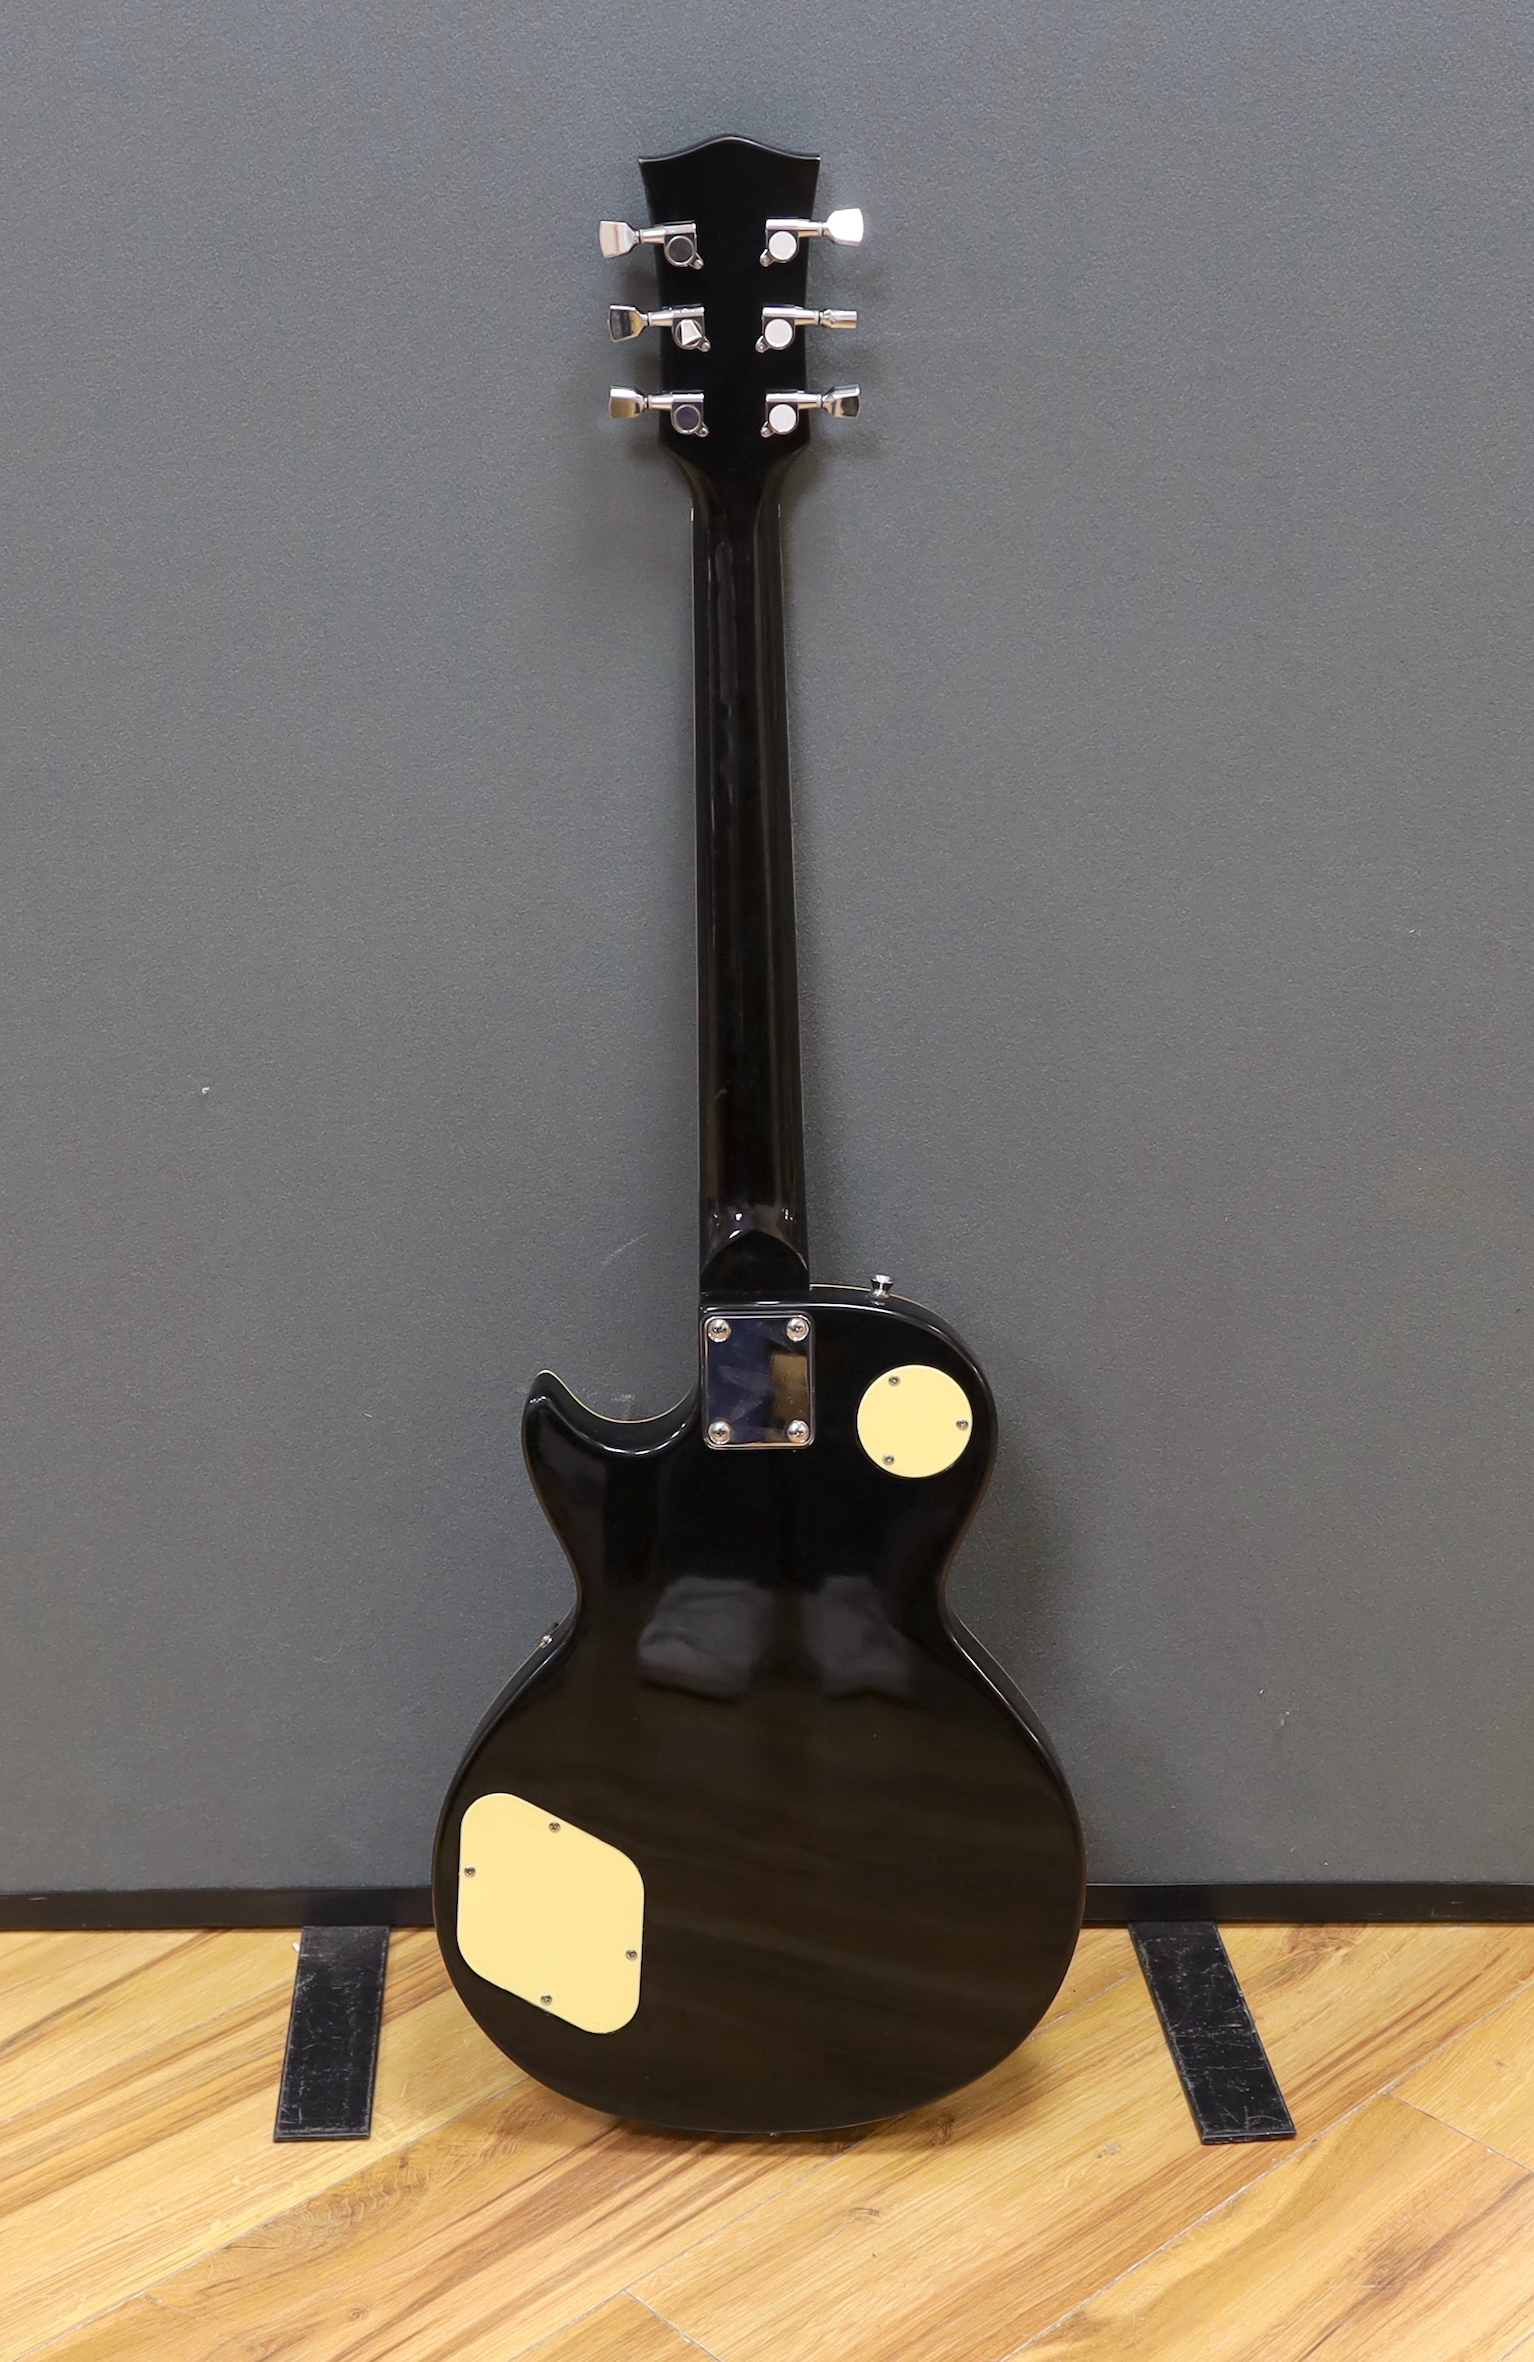 A Rockburn electric guitar, Les Paul copy